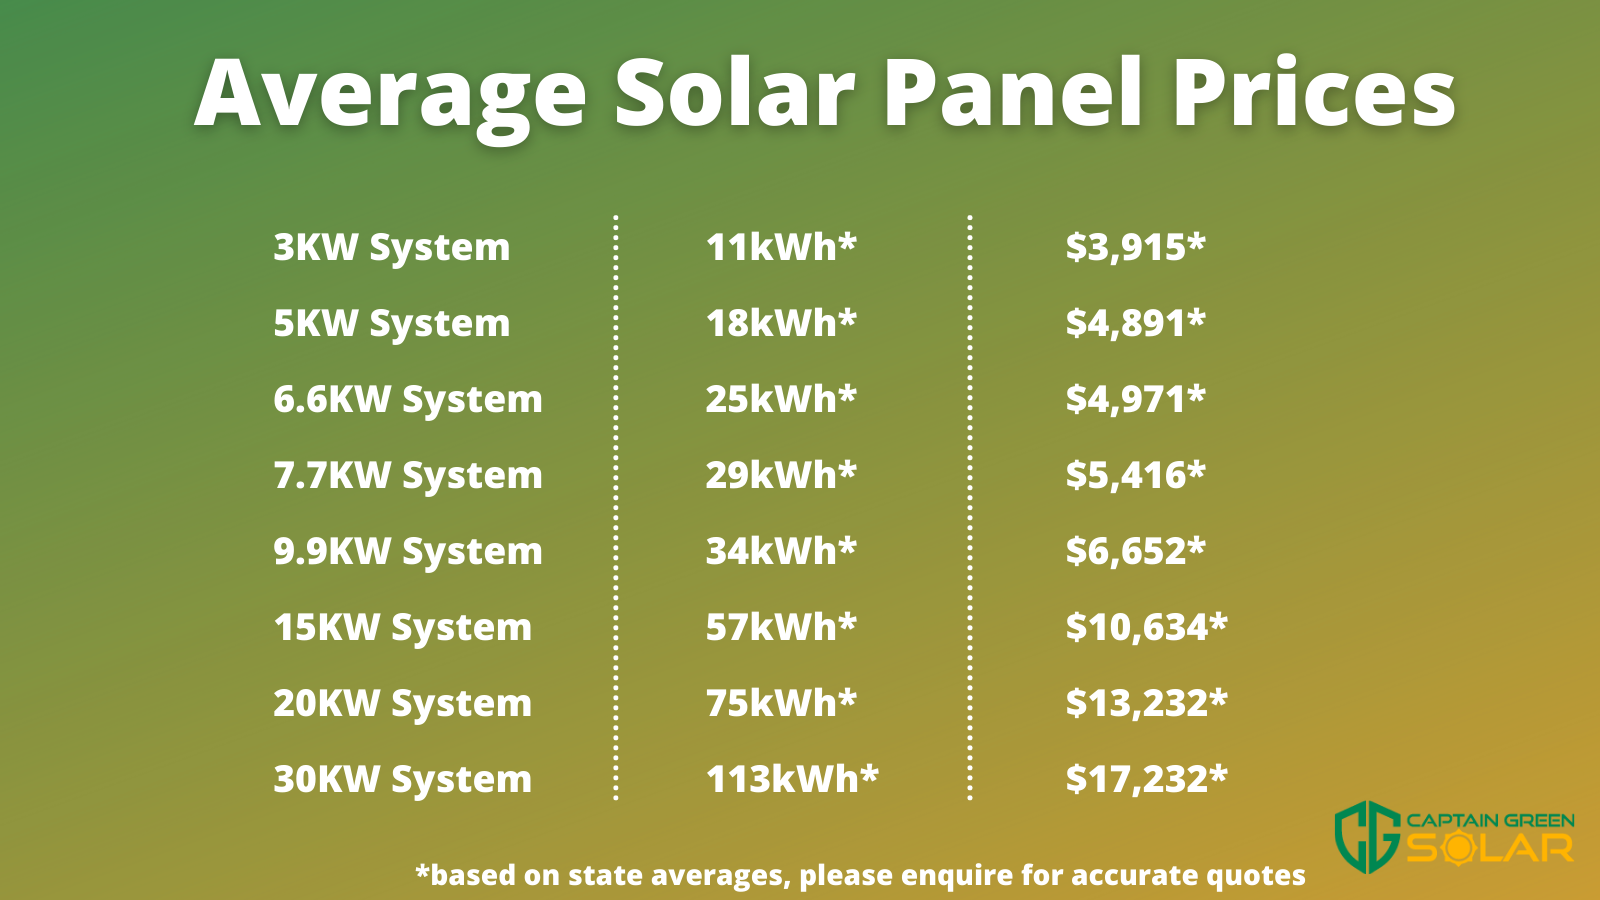 Average Solar Panel Prices Infographic